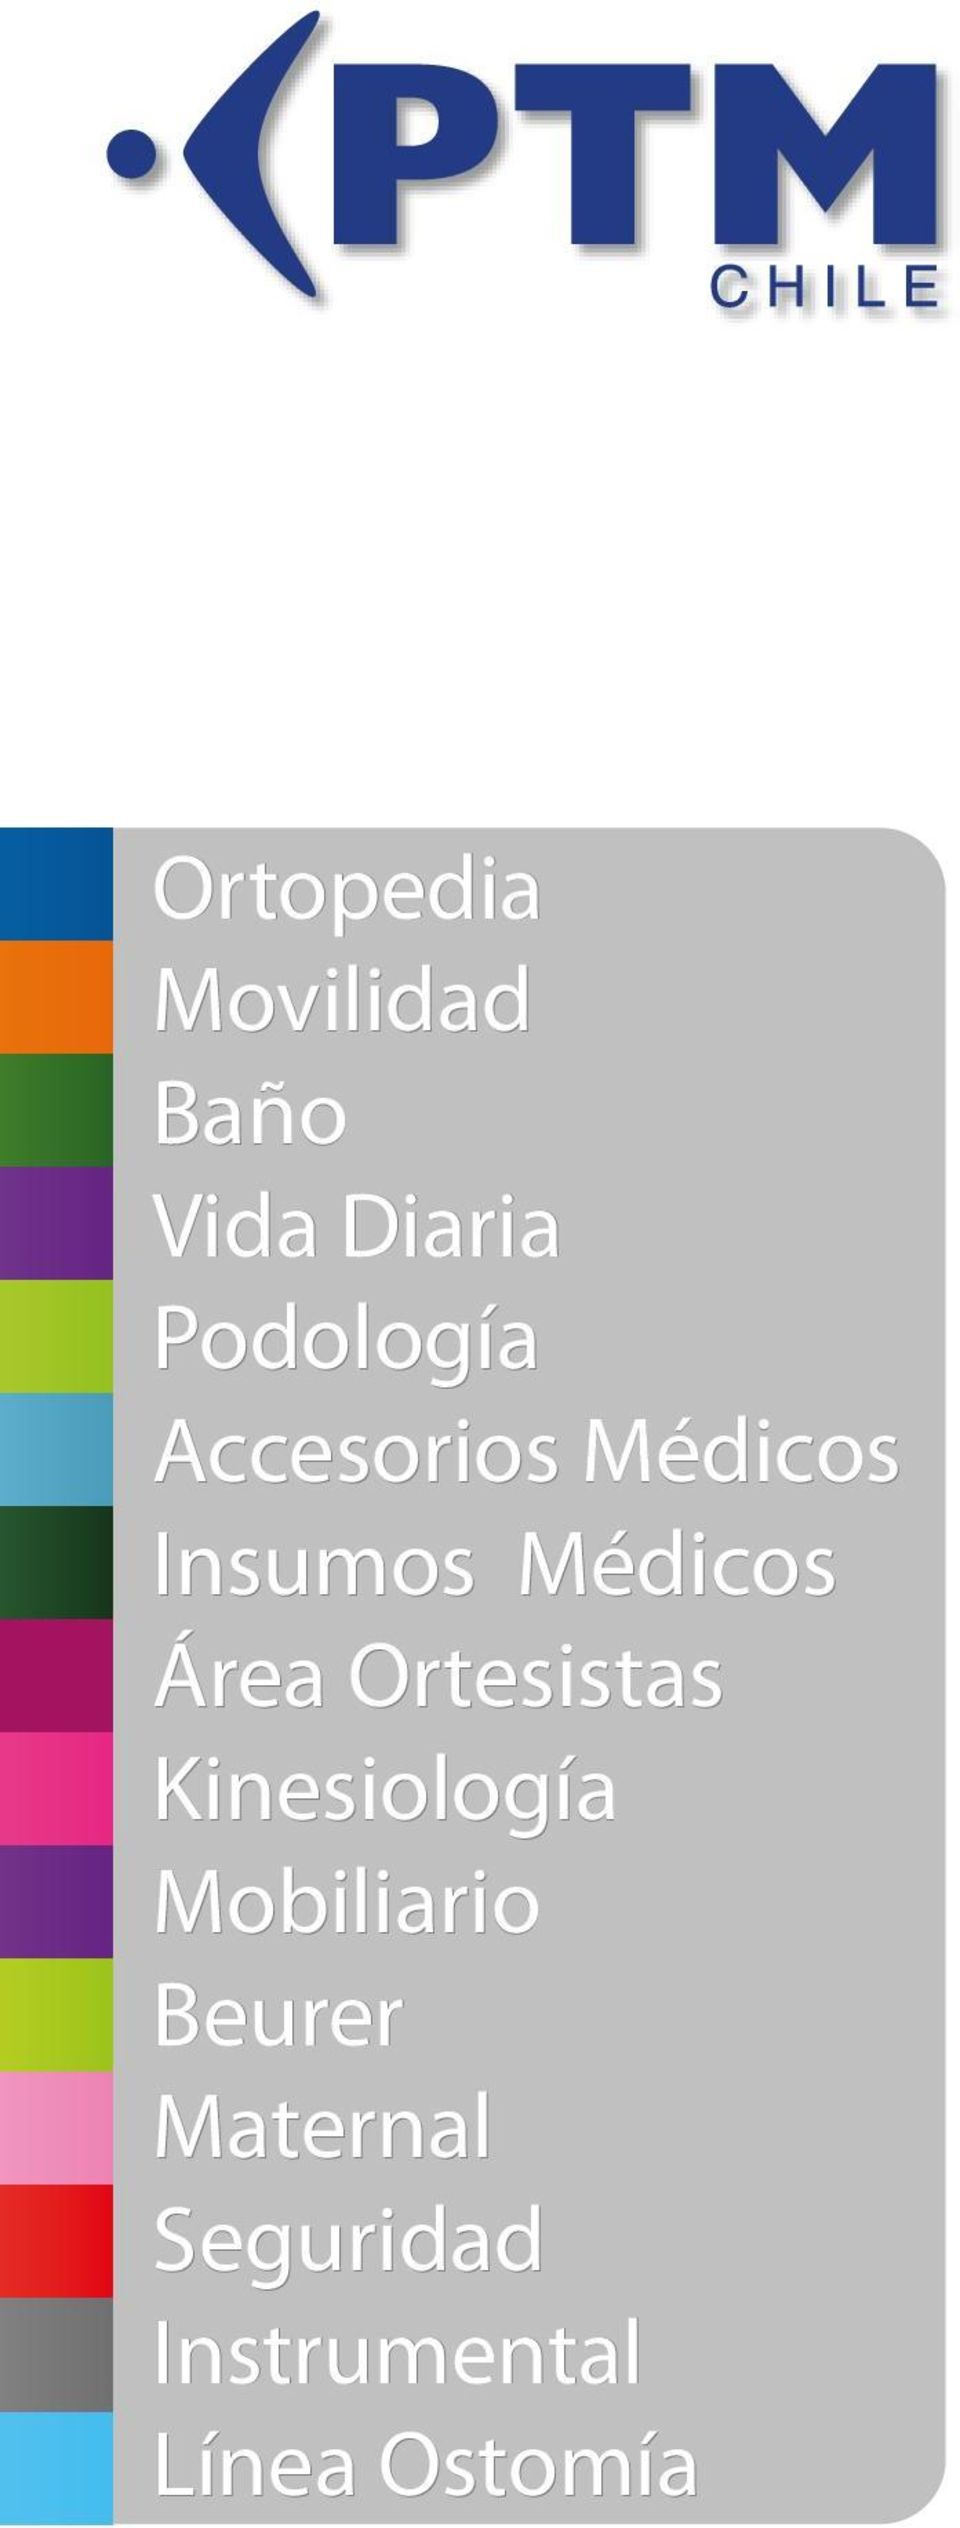 Médicos Área Ortesistas Kinesiología